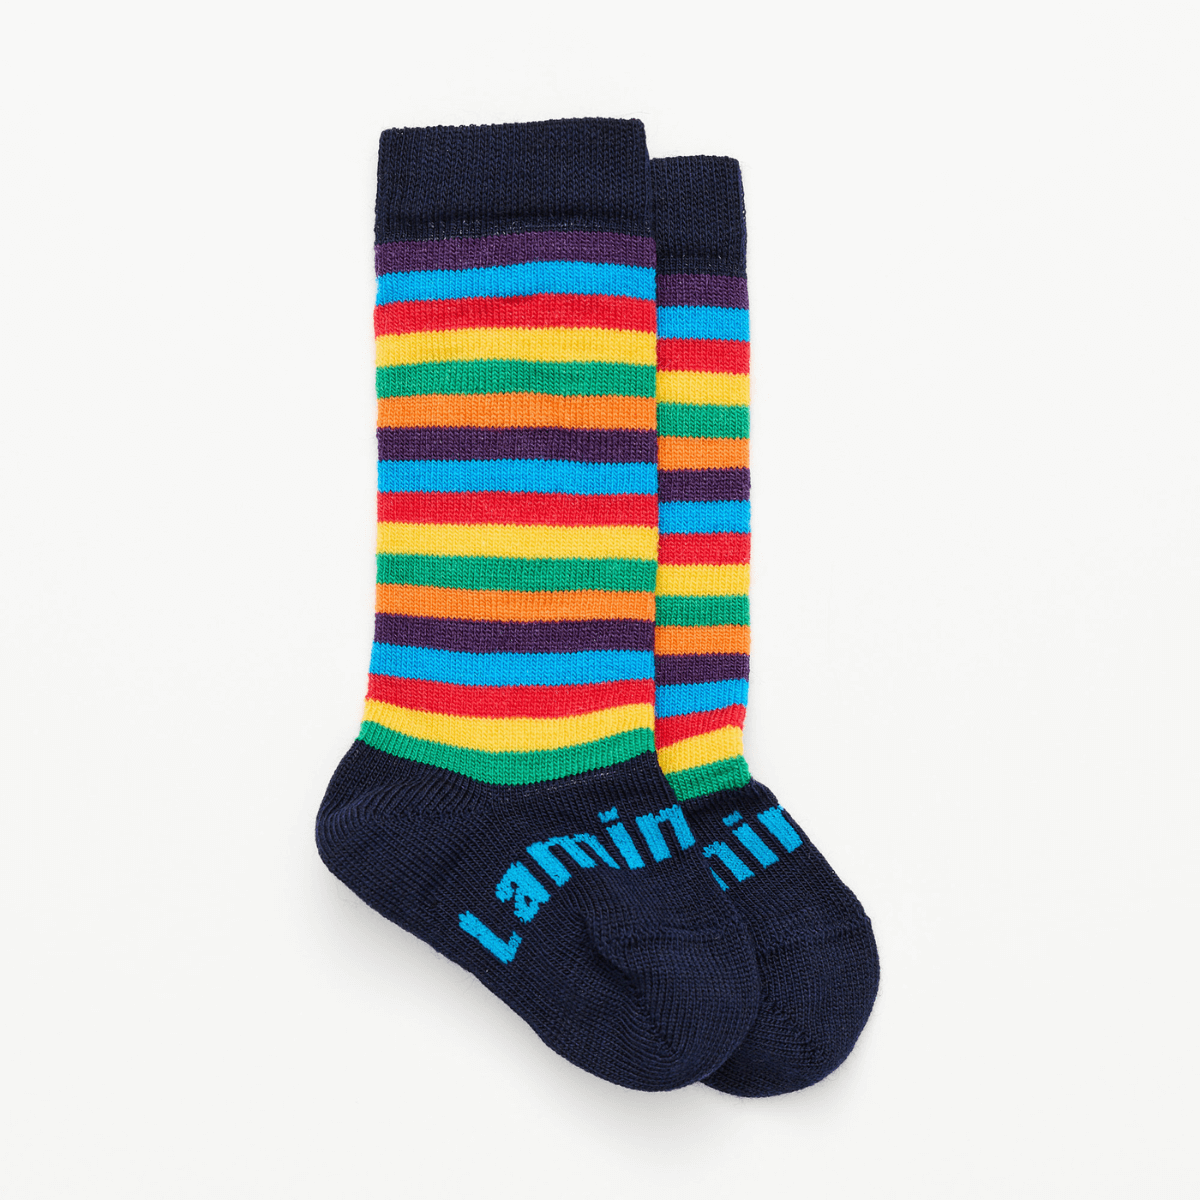 rainbow baby socks merino wool nz aus